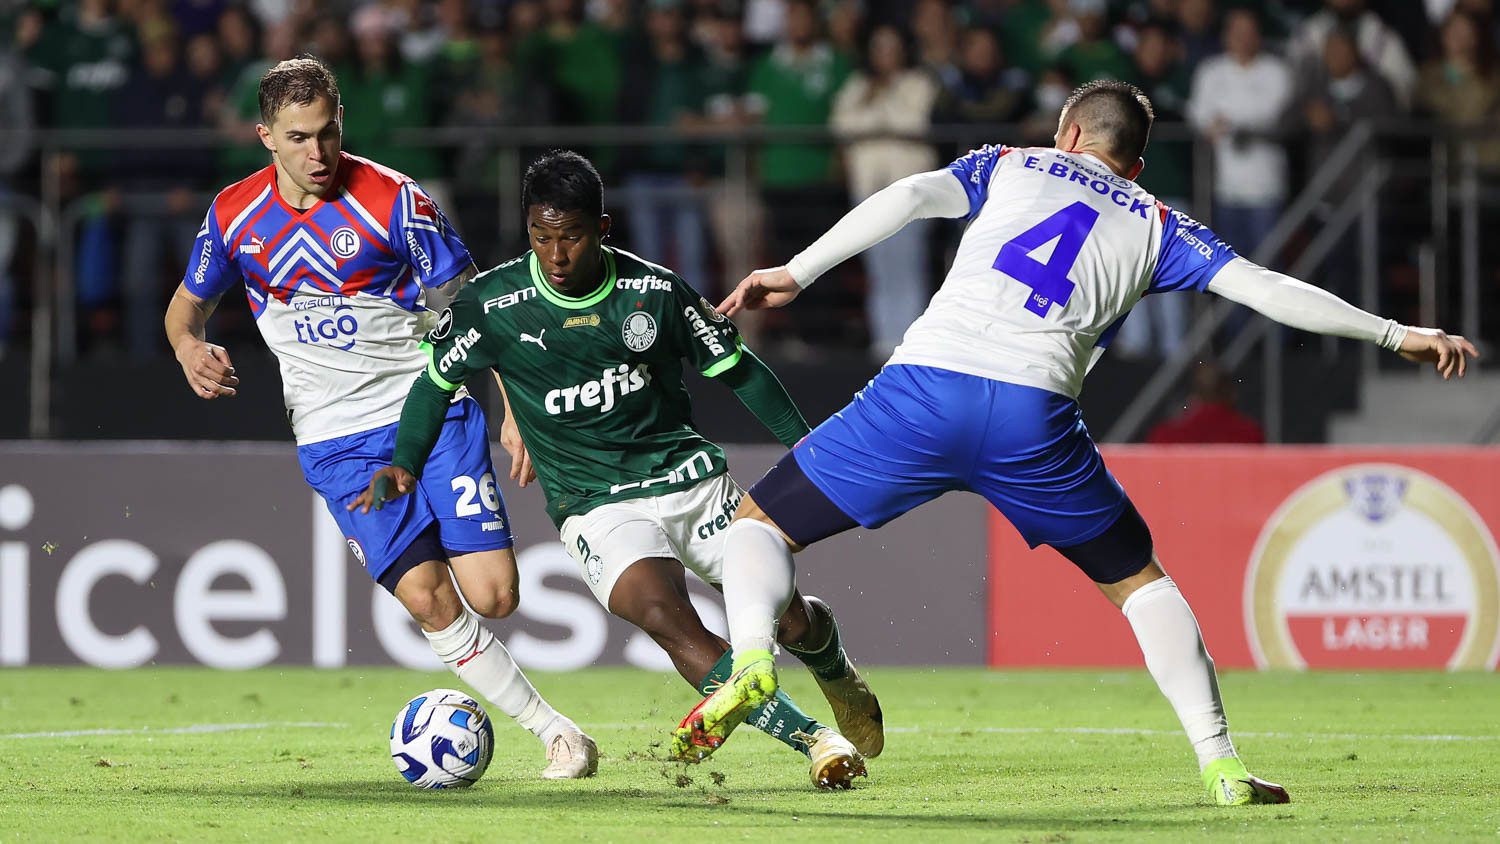 Ingressos a partir de 80 reais para jogo contra Cerro Porteño-PAR no  Morumbi pela Libertadores – Palmeiras